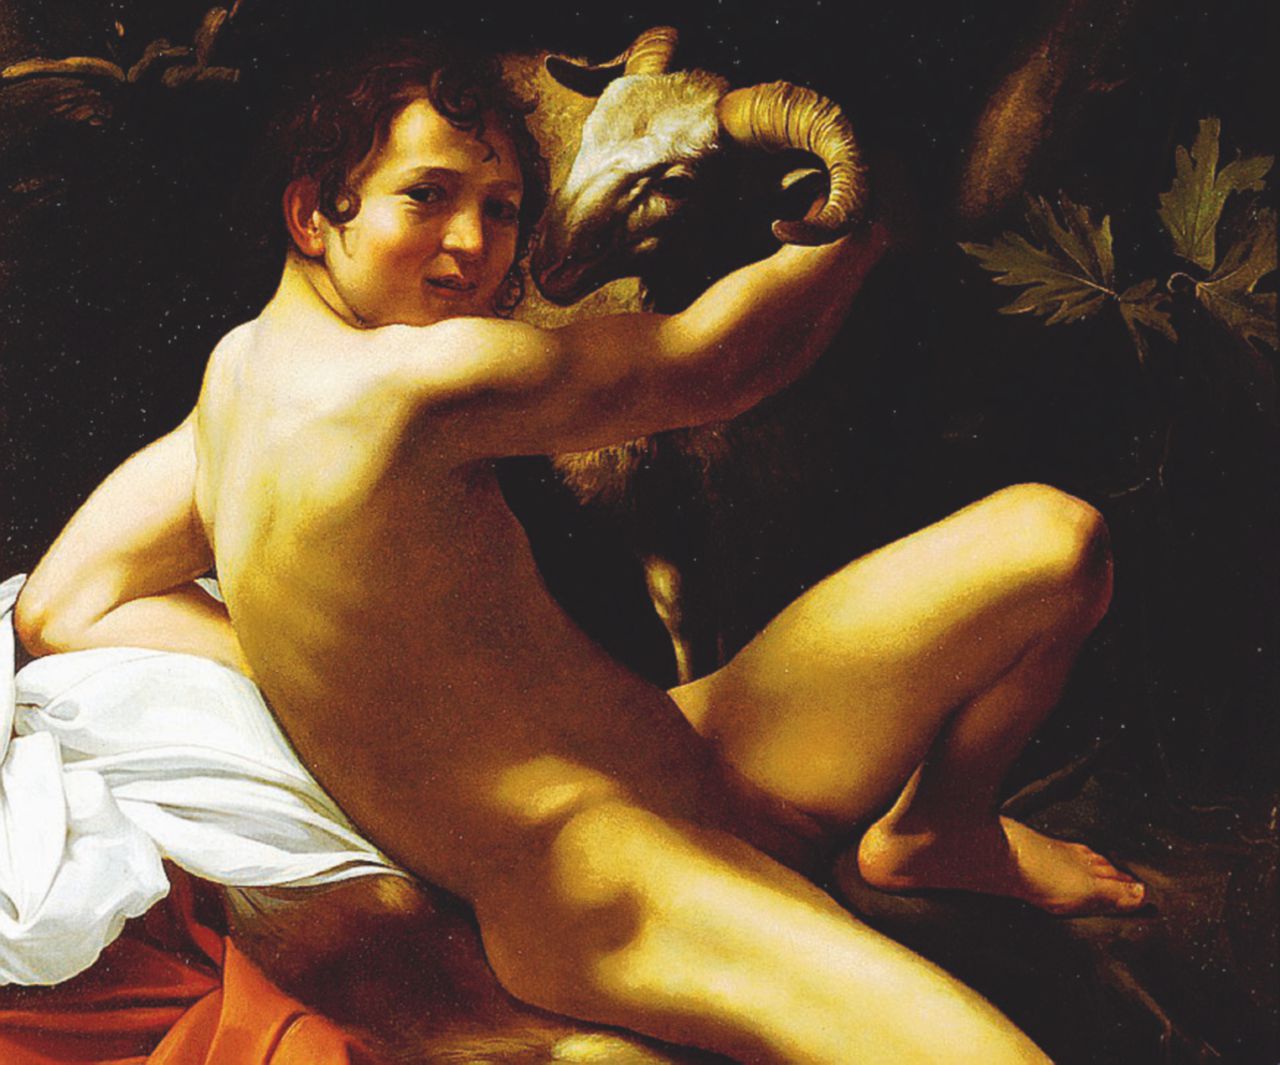 Copertina di Raccontare bellezza: Montanari e l’arte nuda di Caravaggio